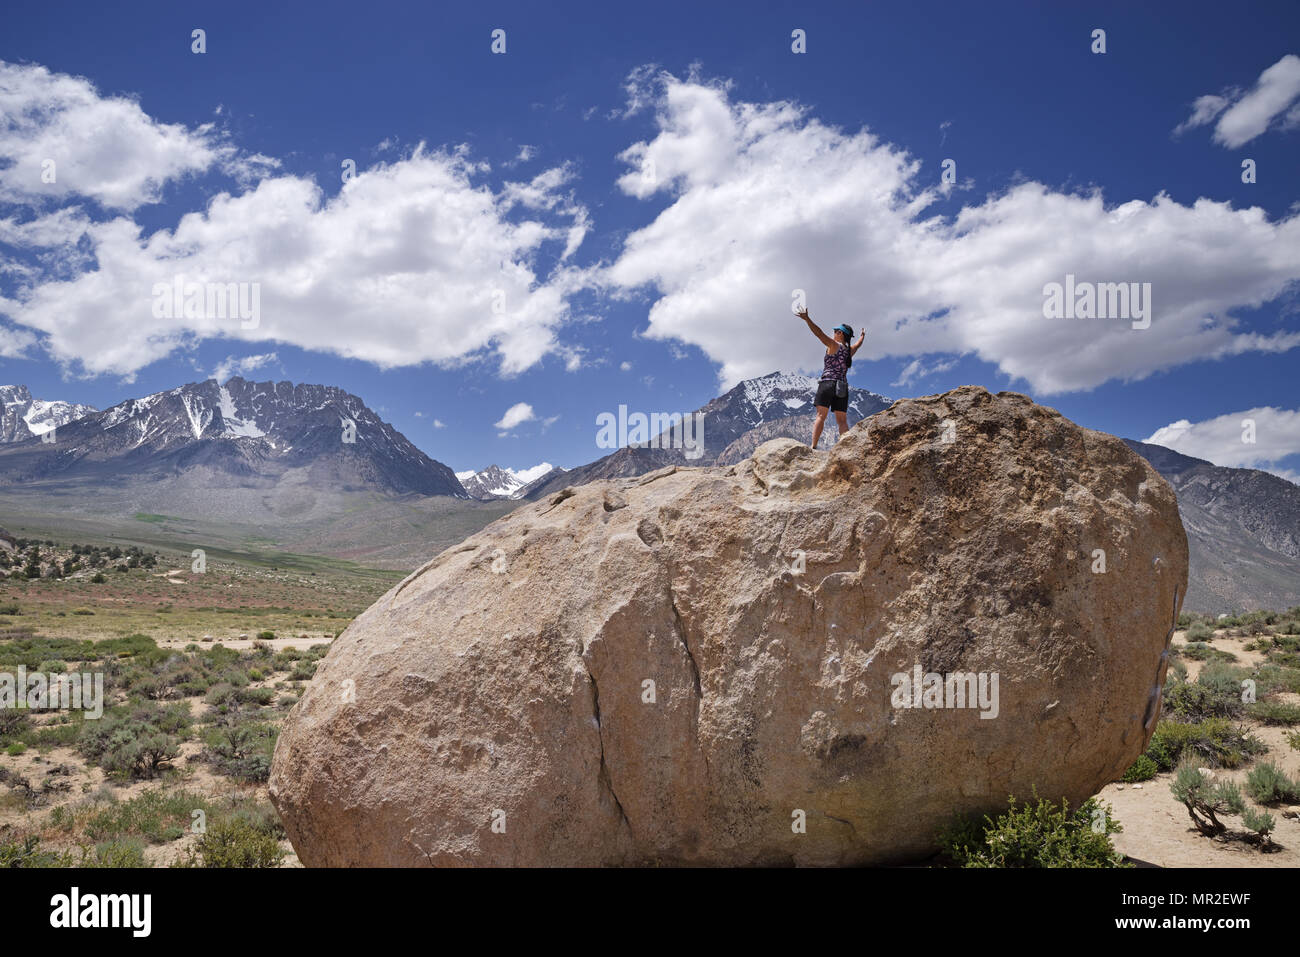 Une femme en haut d'un rocher embrasse la nature avec les deux bras Banque D'Images